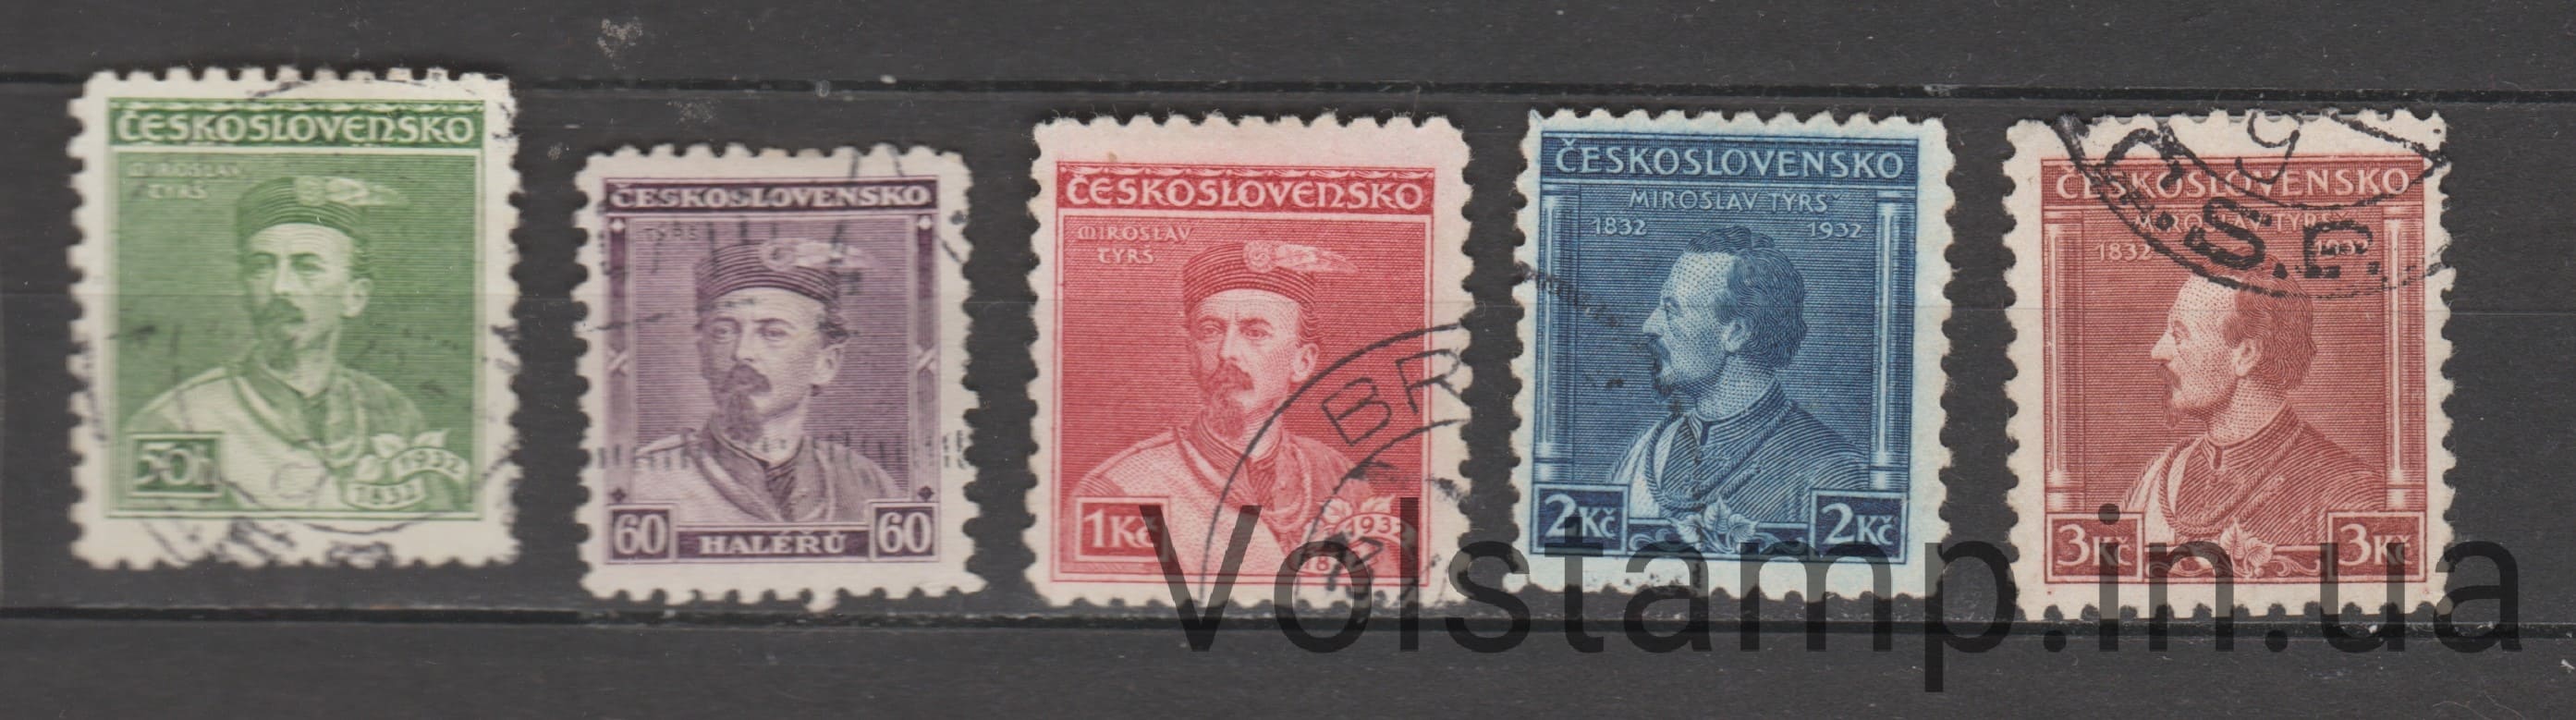 1932 Чехословакия Серия марок (Личности) Гашеные №314-318